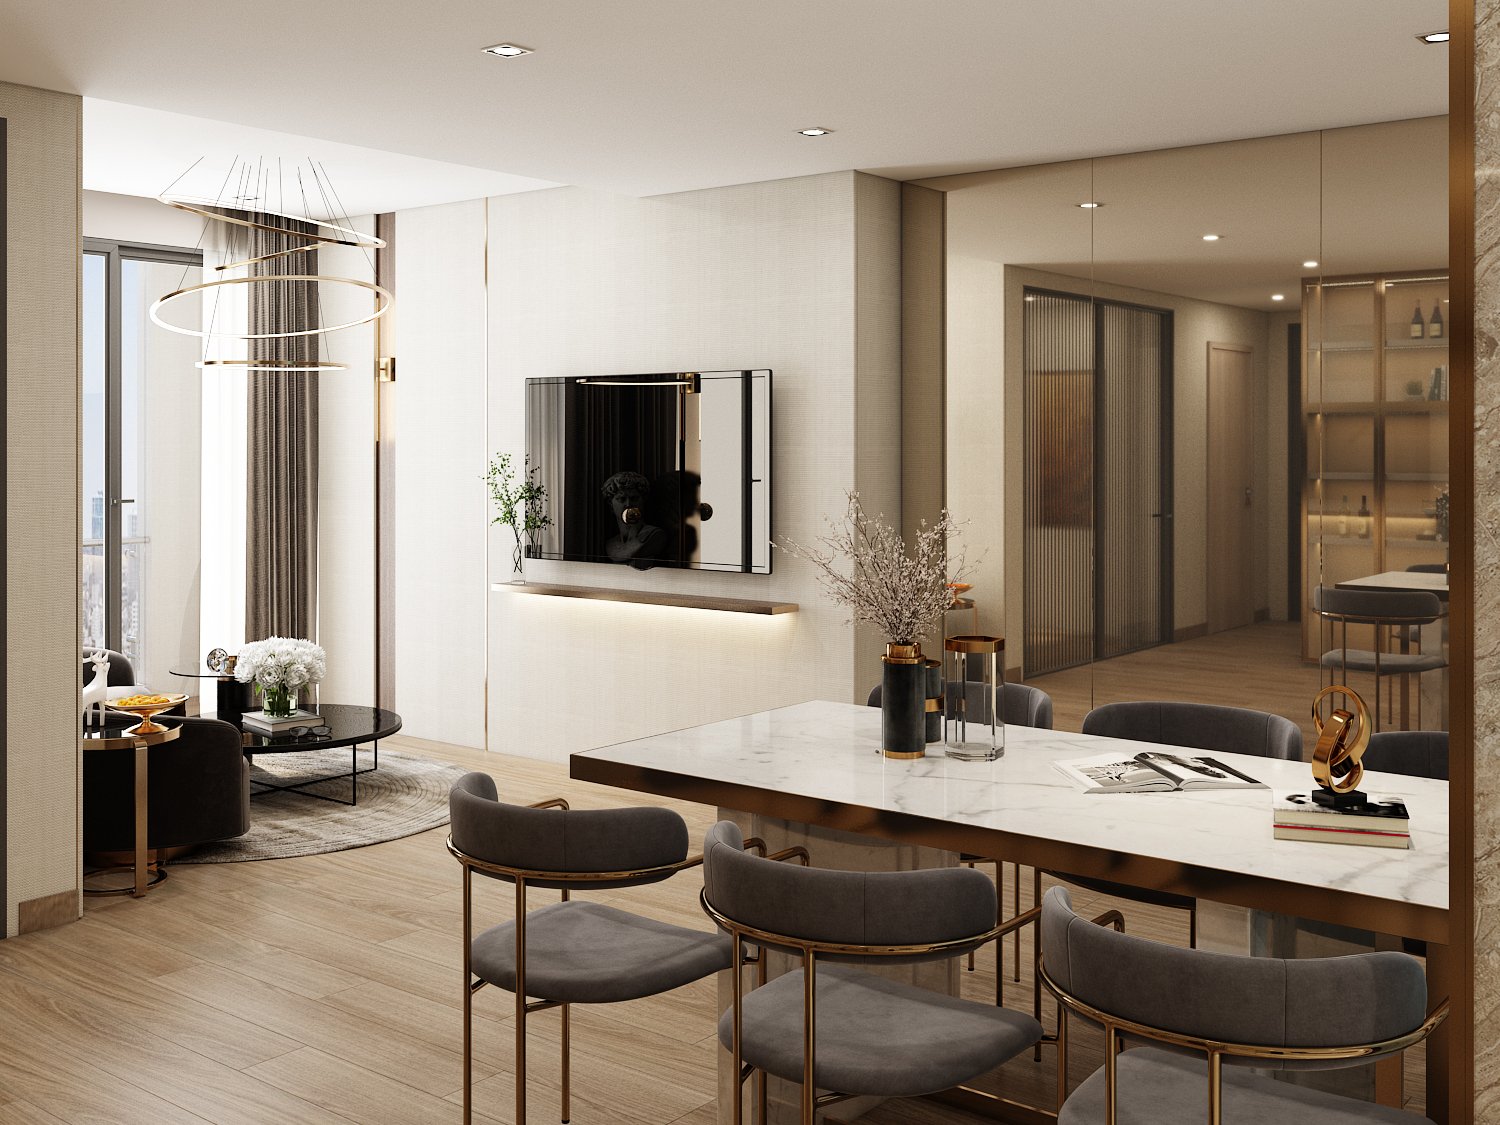 Thiết kế hiện đại cùng nội thất cao cấp tạo nên sức hút cho căn hộ Grand SunLake